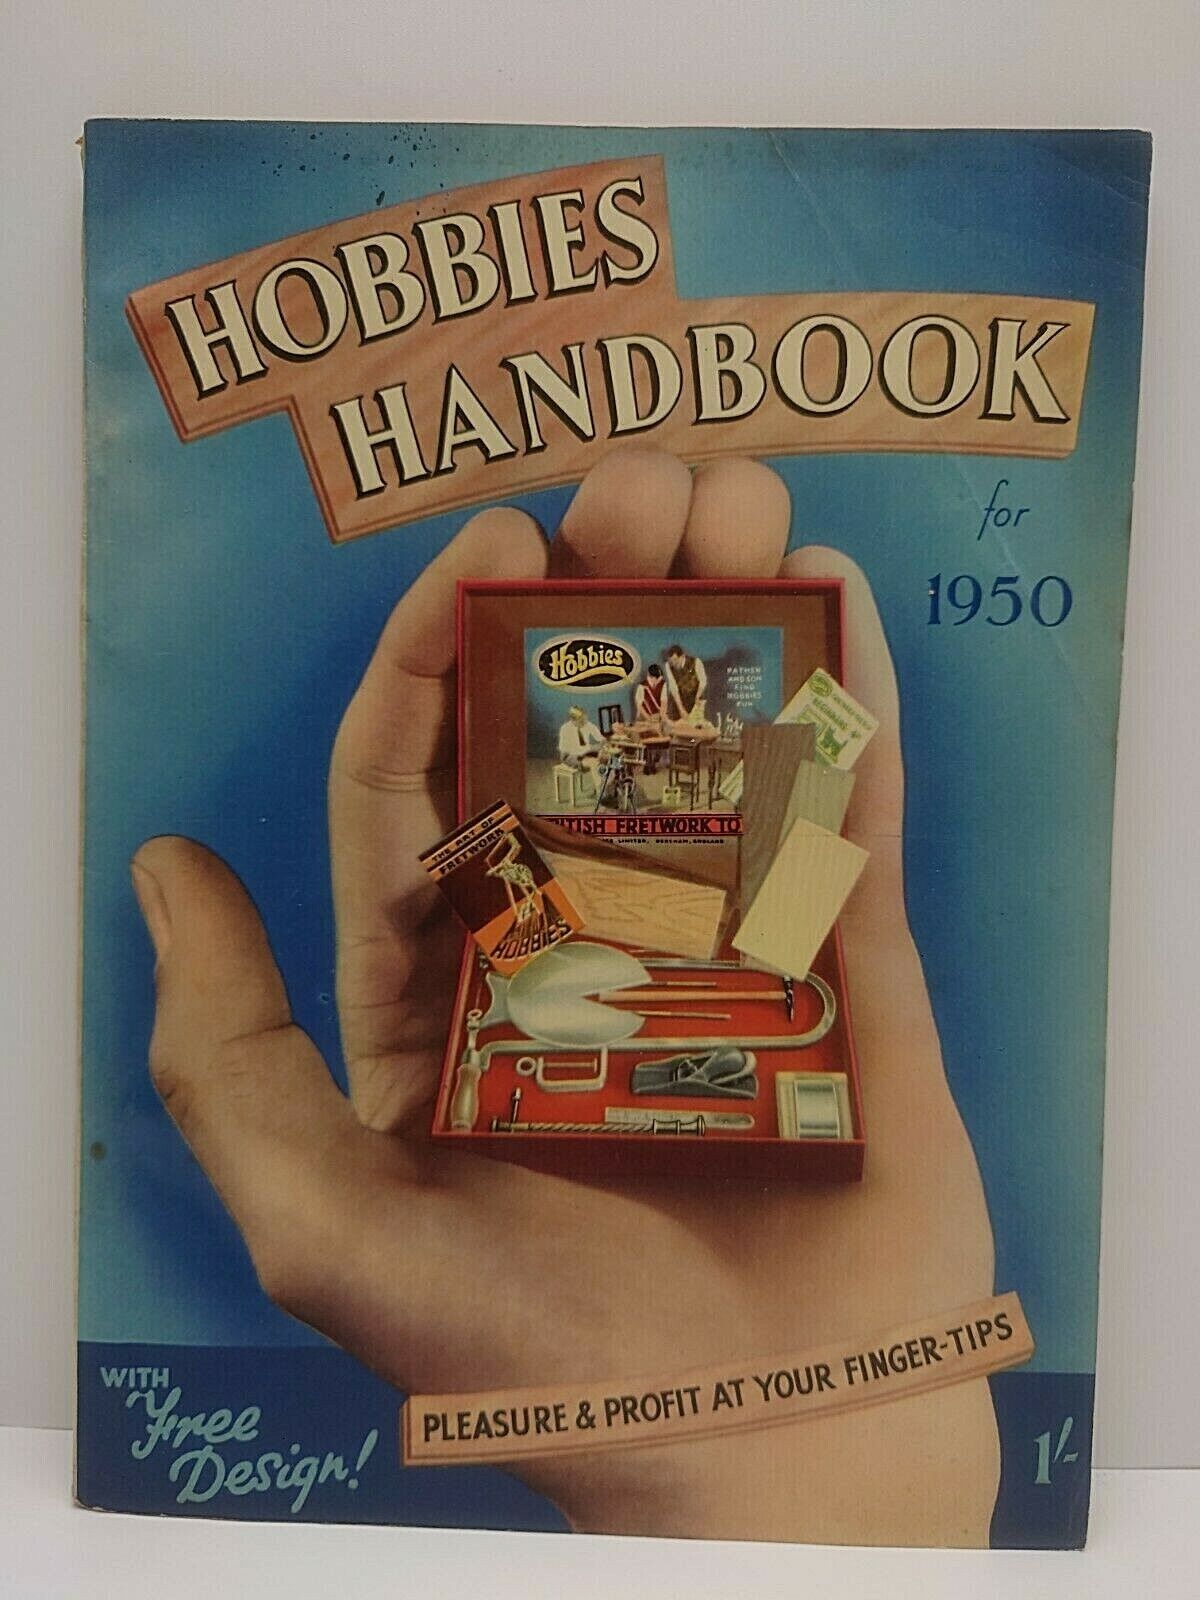 hobbies Handbook 1950 booklet of model making Craft woodwork etc Vintage Adverts